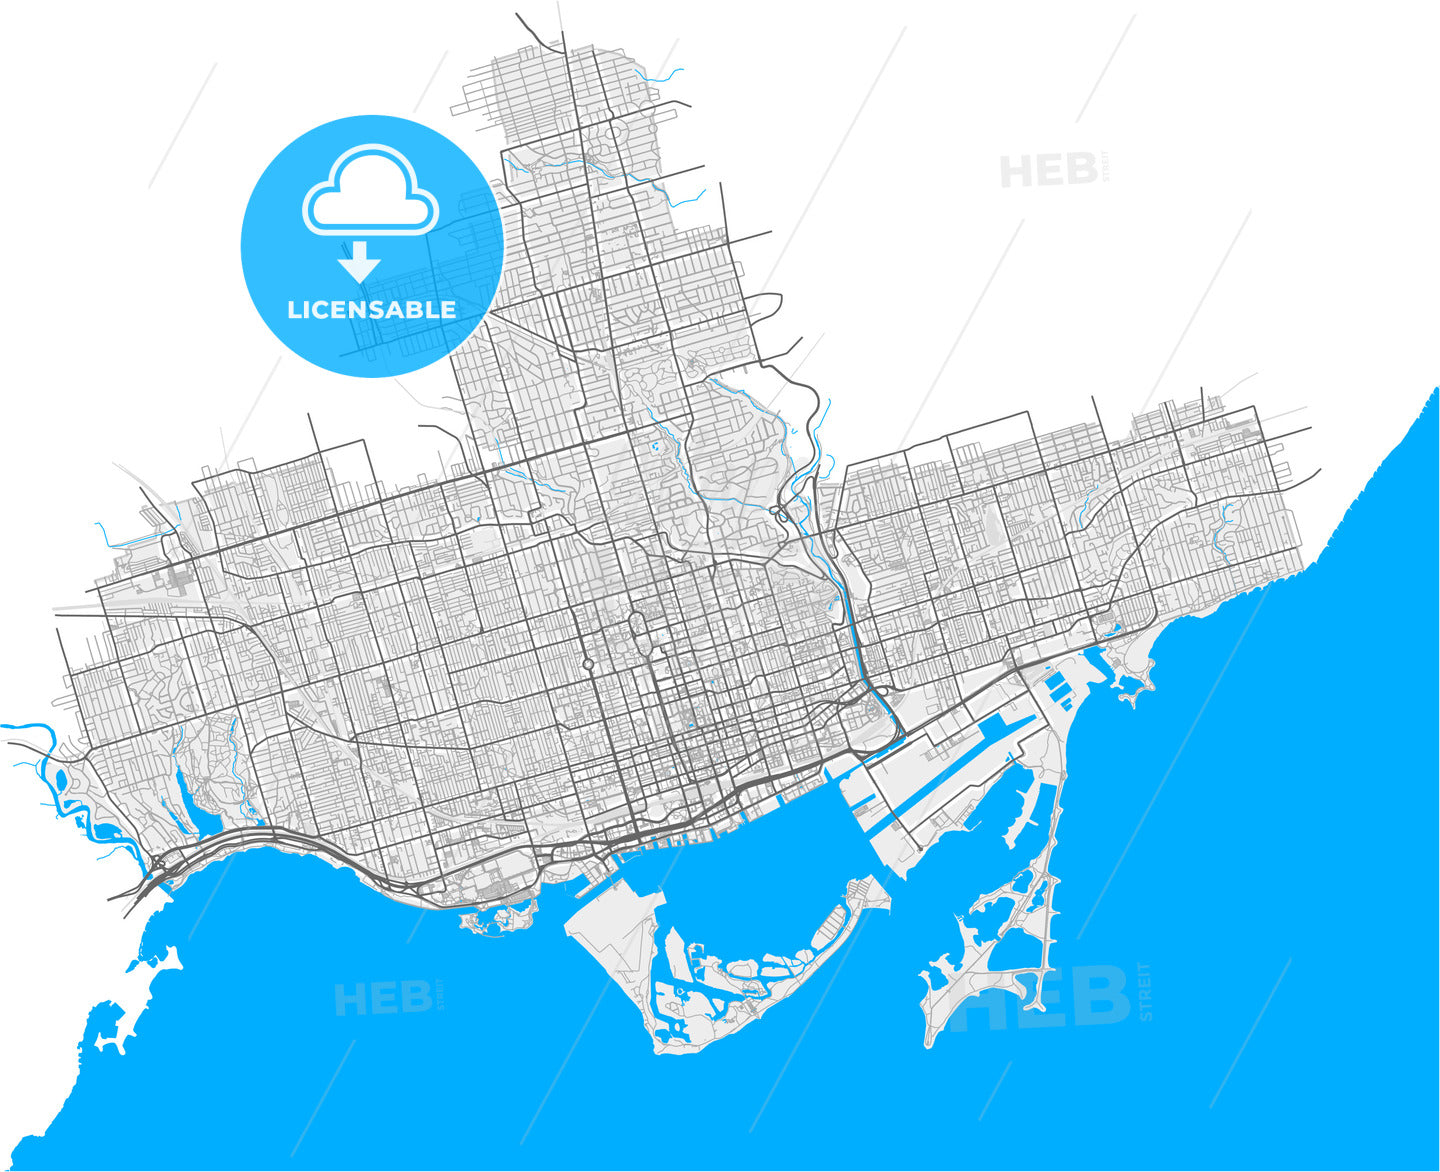 Toronto, Ontario, Canada, high quality vector map